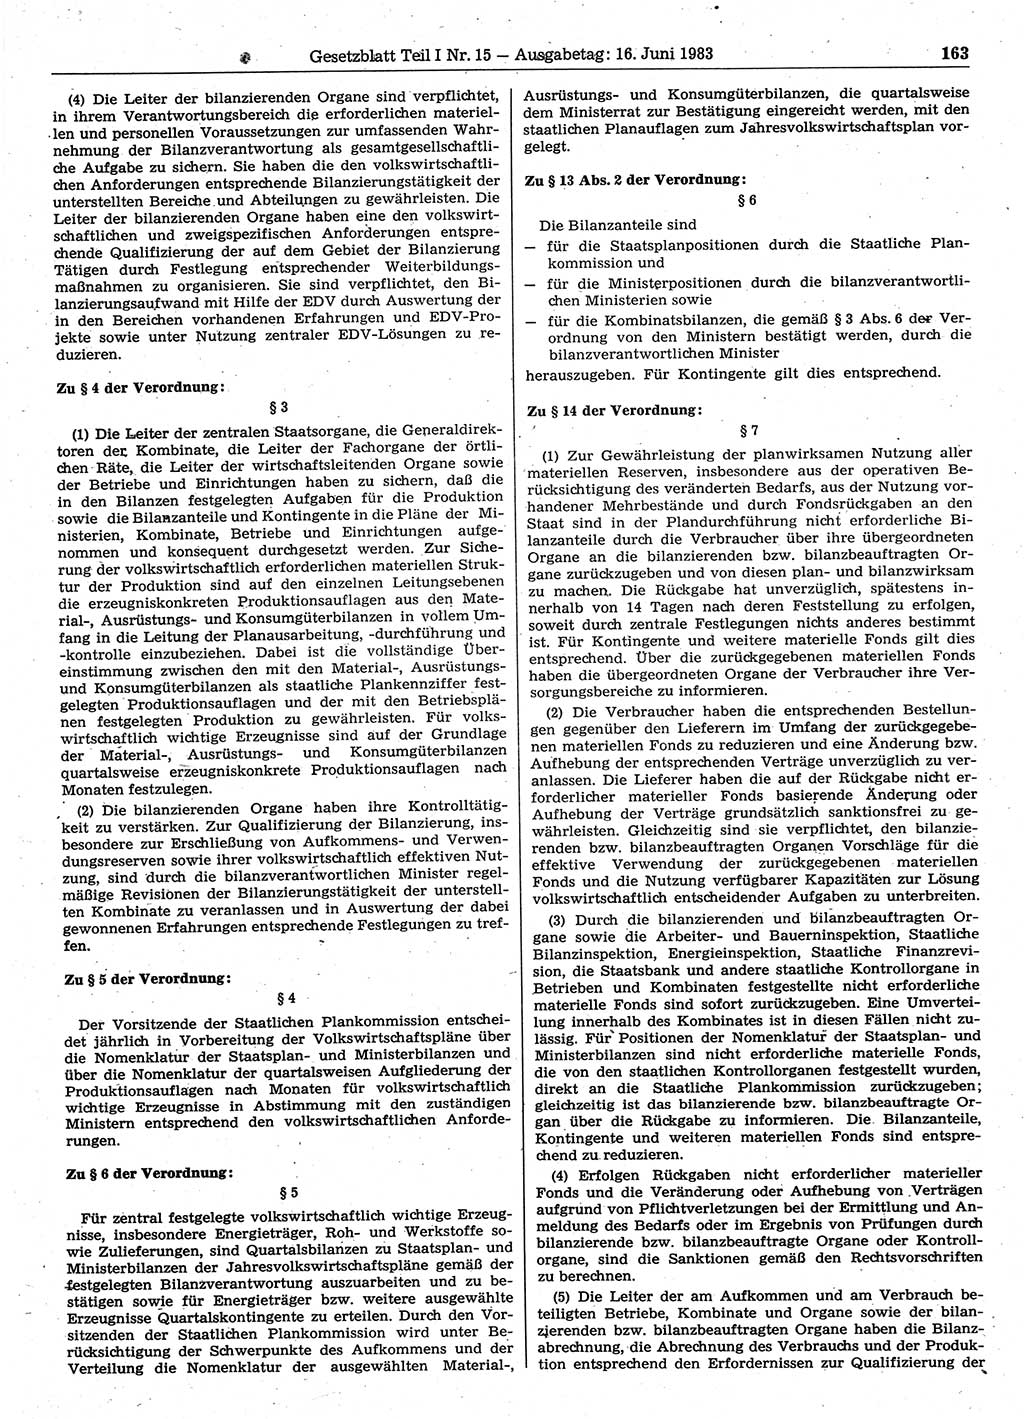 Gesetzblatt (GBl.) der Deutschen Demokratischen Republik (DDR) Teil Ⅰ 1983, Seite 163 (GBl. DDR Ⅰ 1983, S. 163)